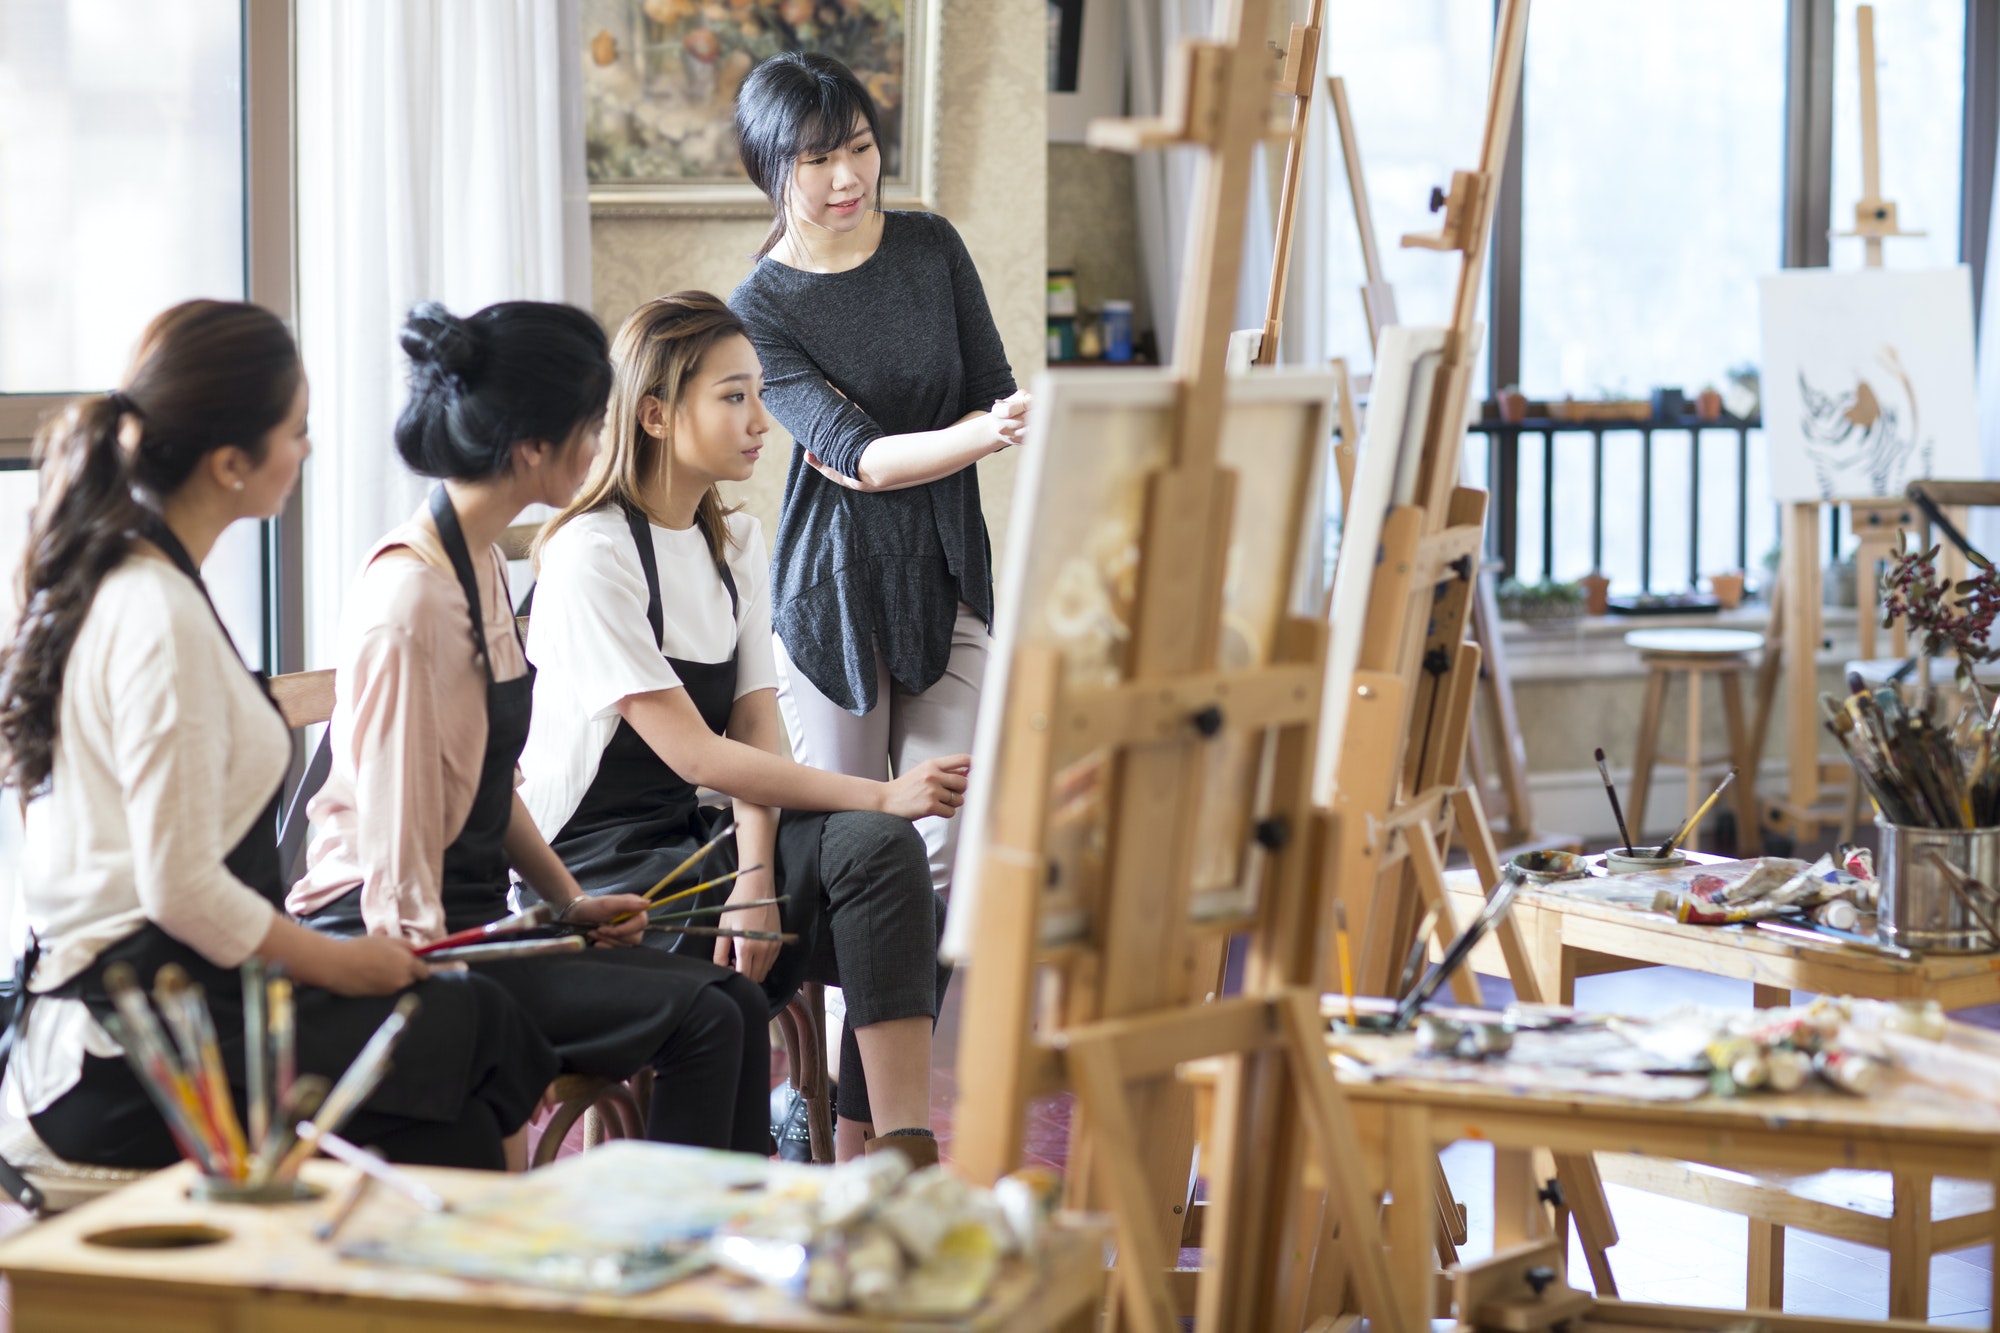 Art teacher with young women in studio